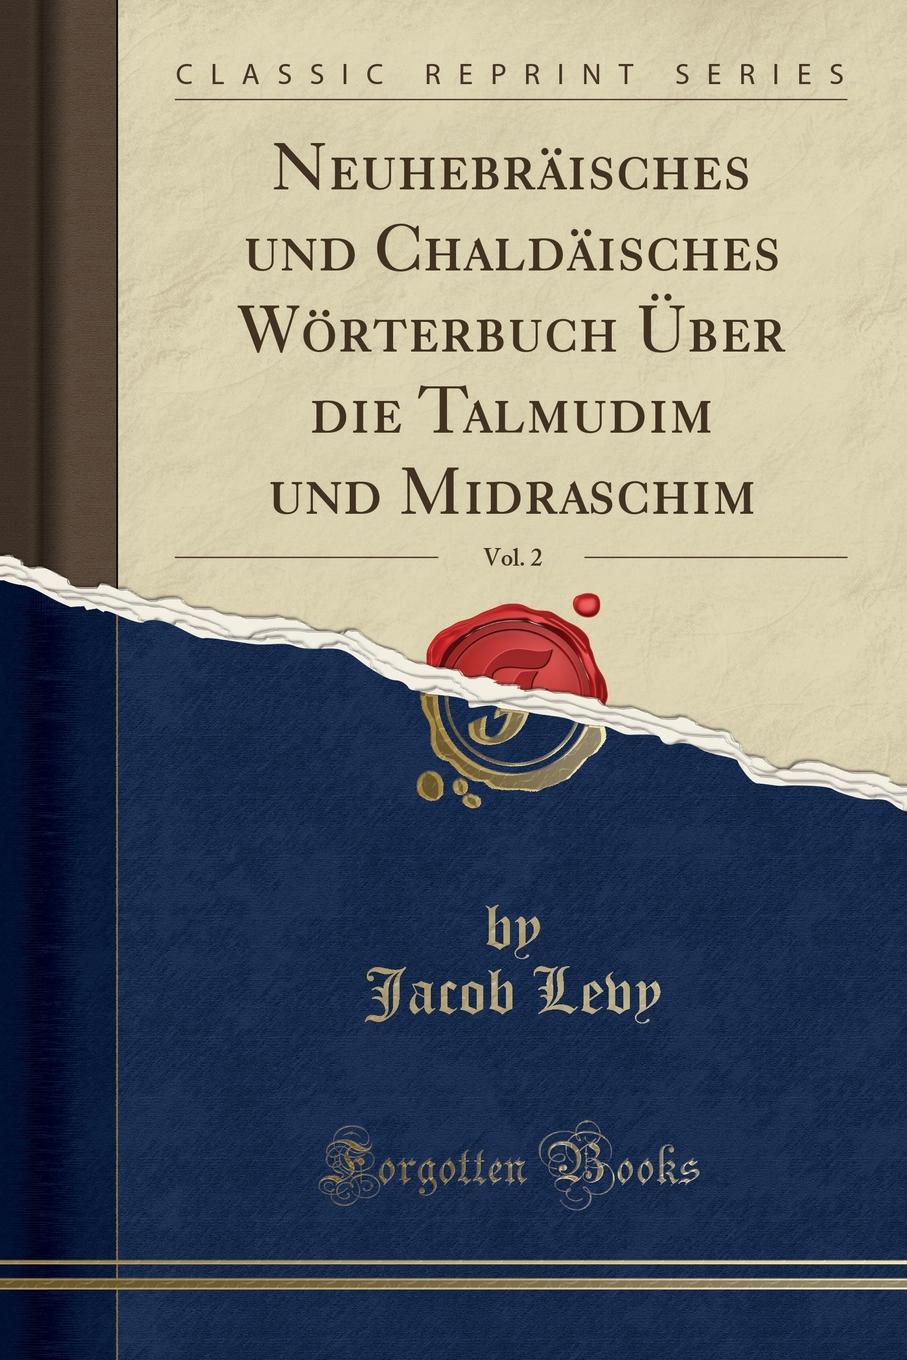 Neuhebraisches und Chaldaisches Worterbuch Uber die Talmudim und Midraschim, Vol. 2 (Classic Reprint)